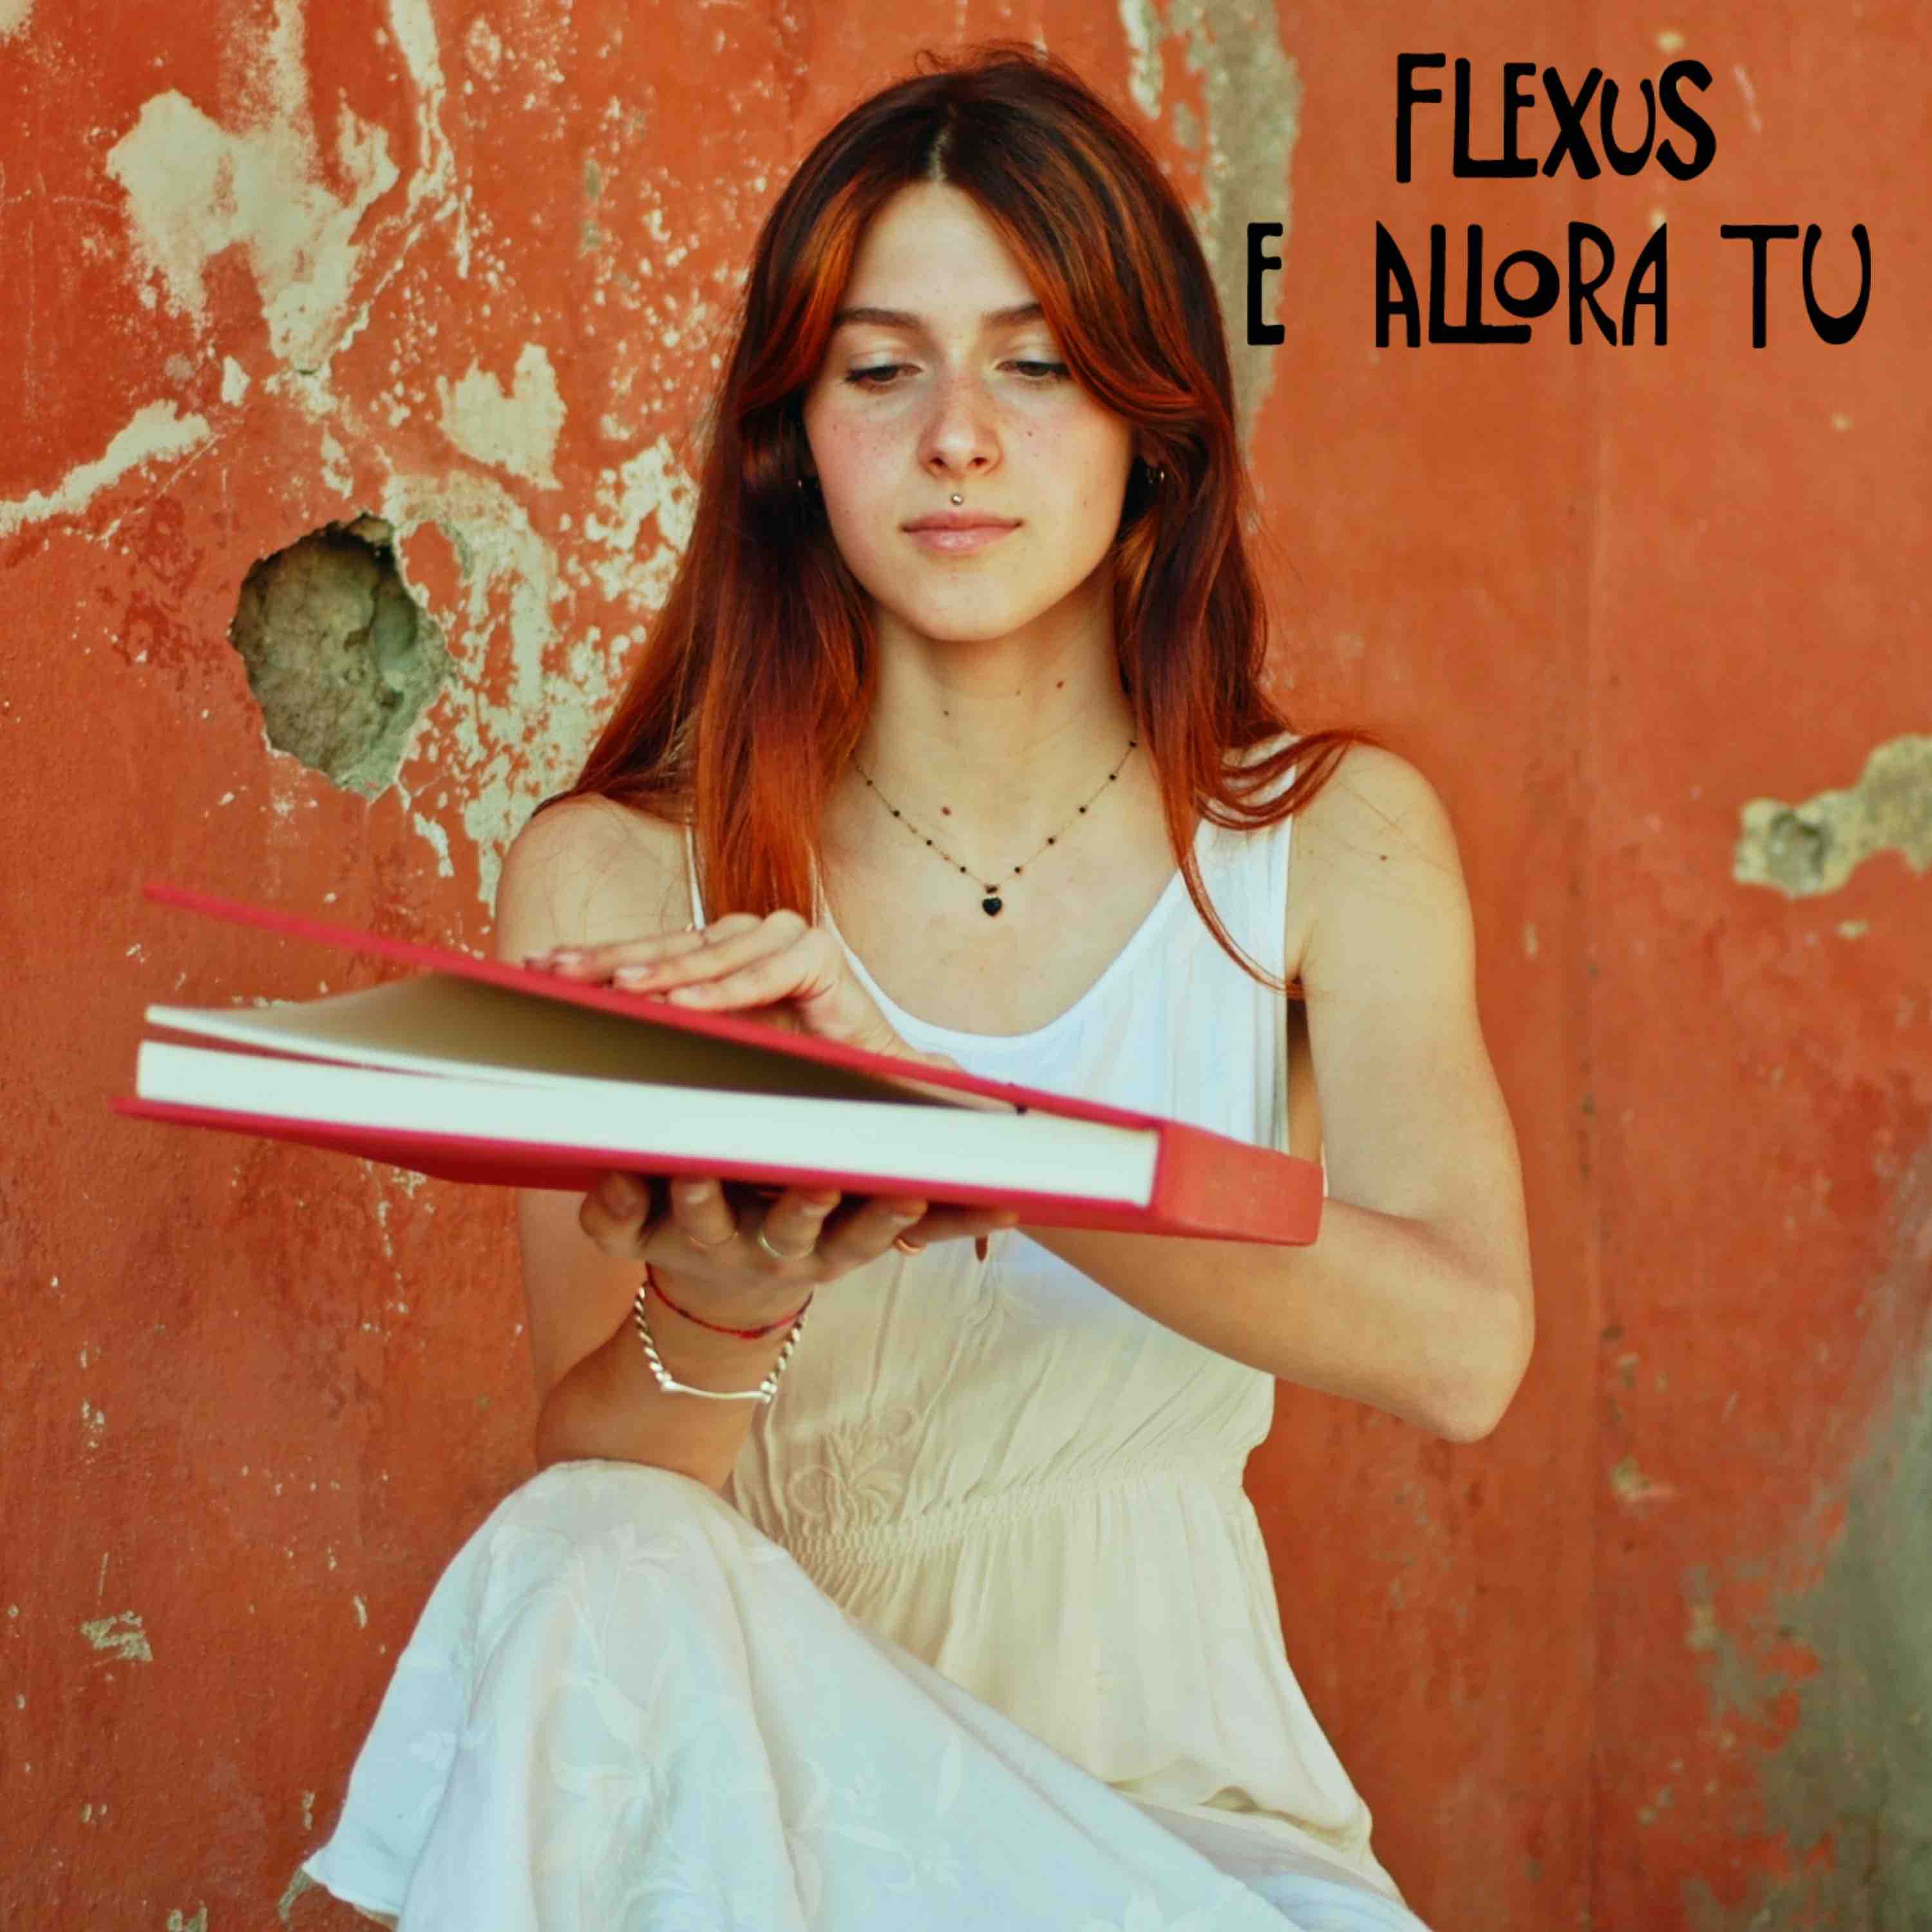 Flexus E Allora Tu front cover